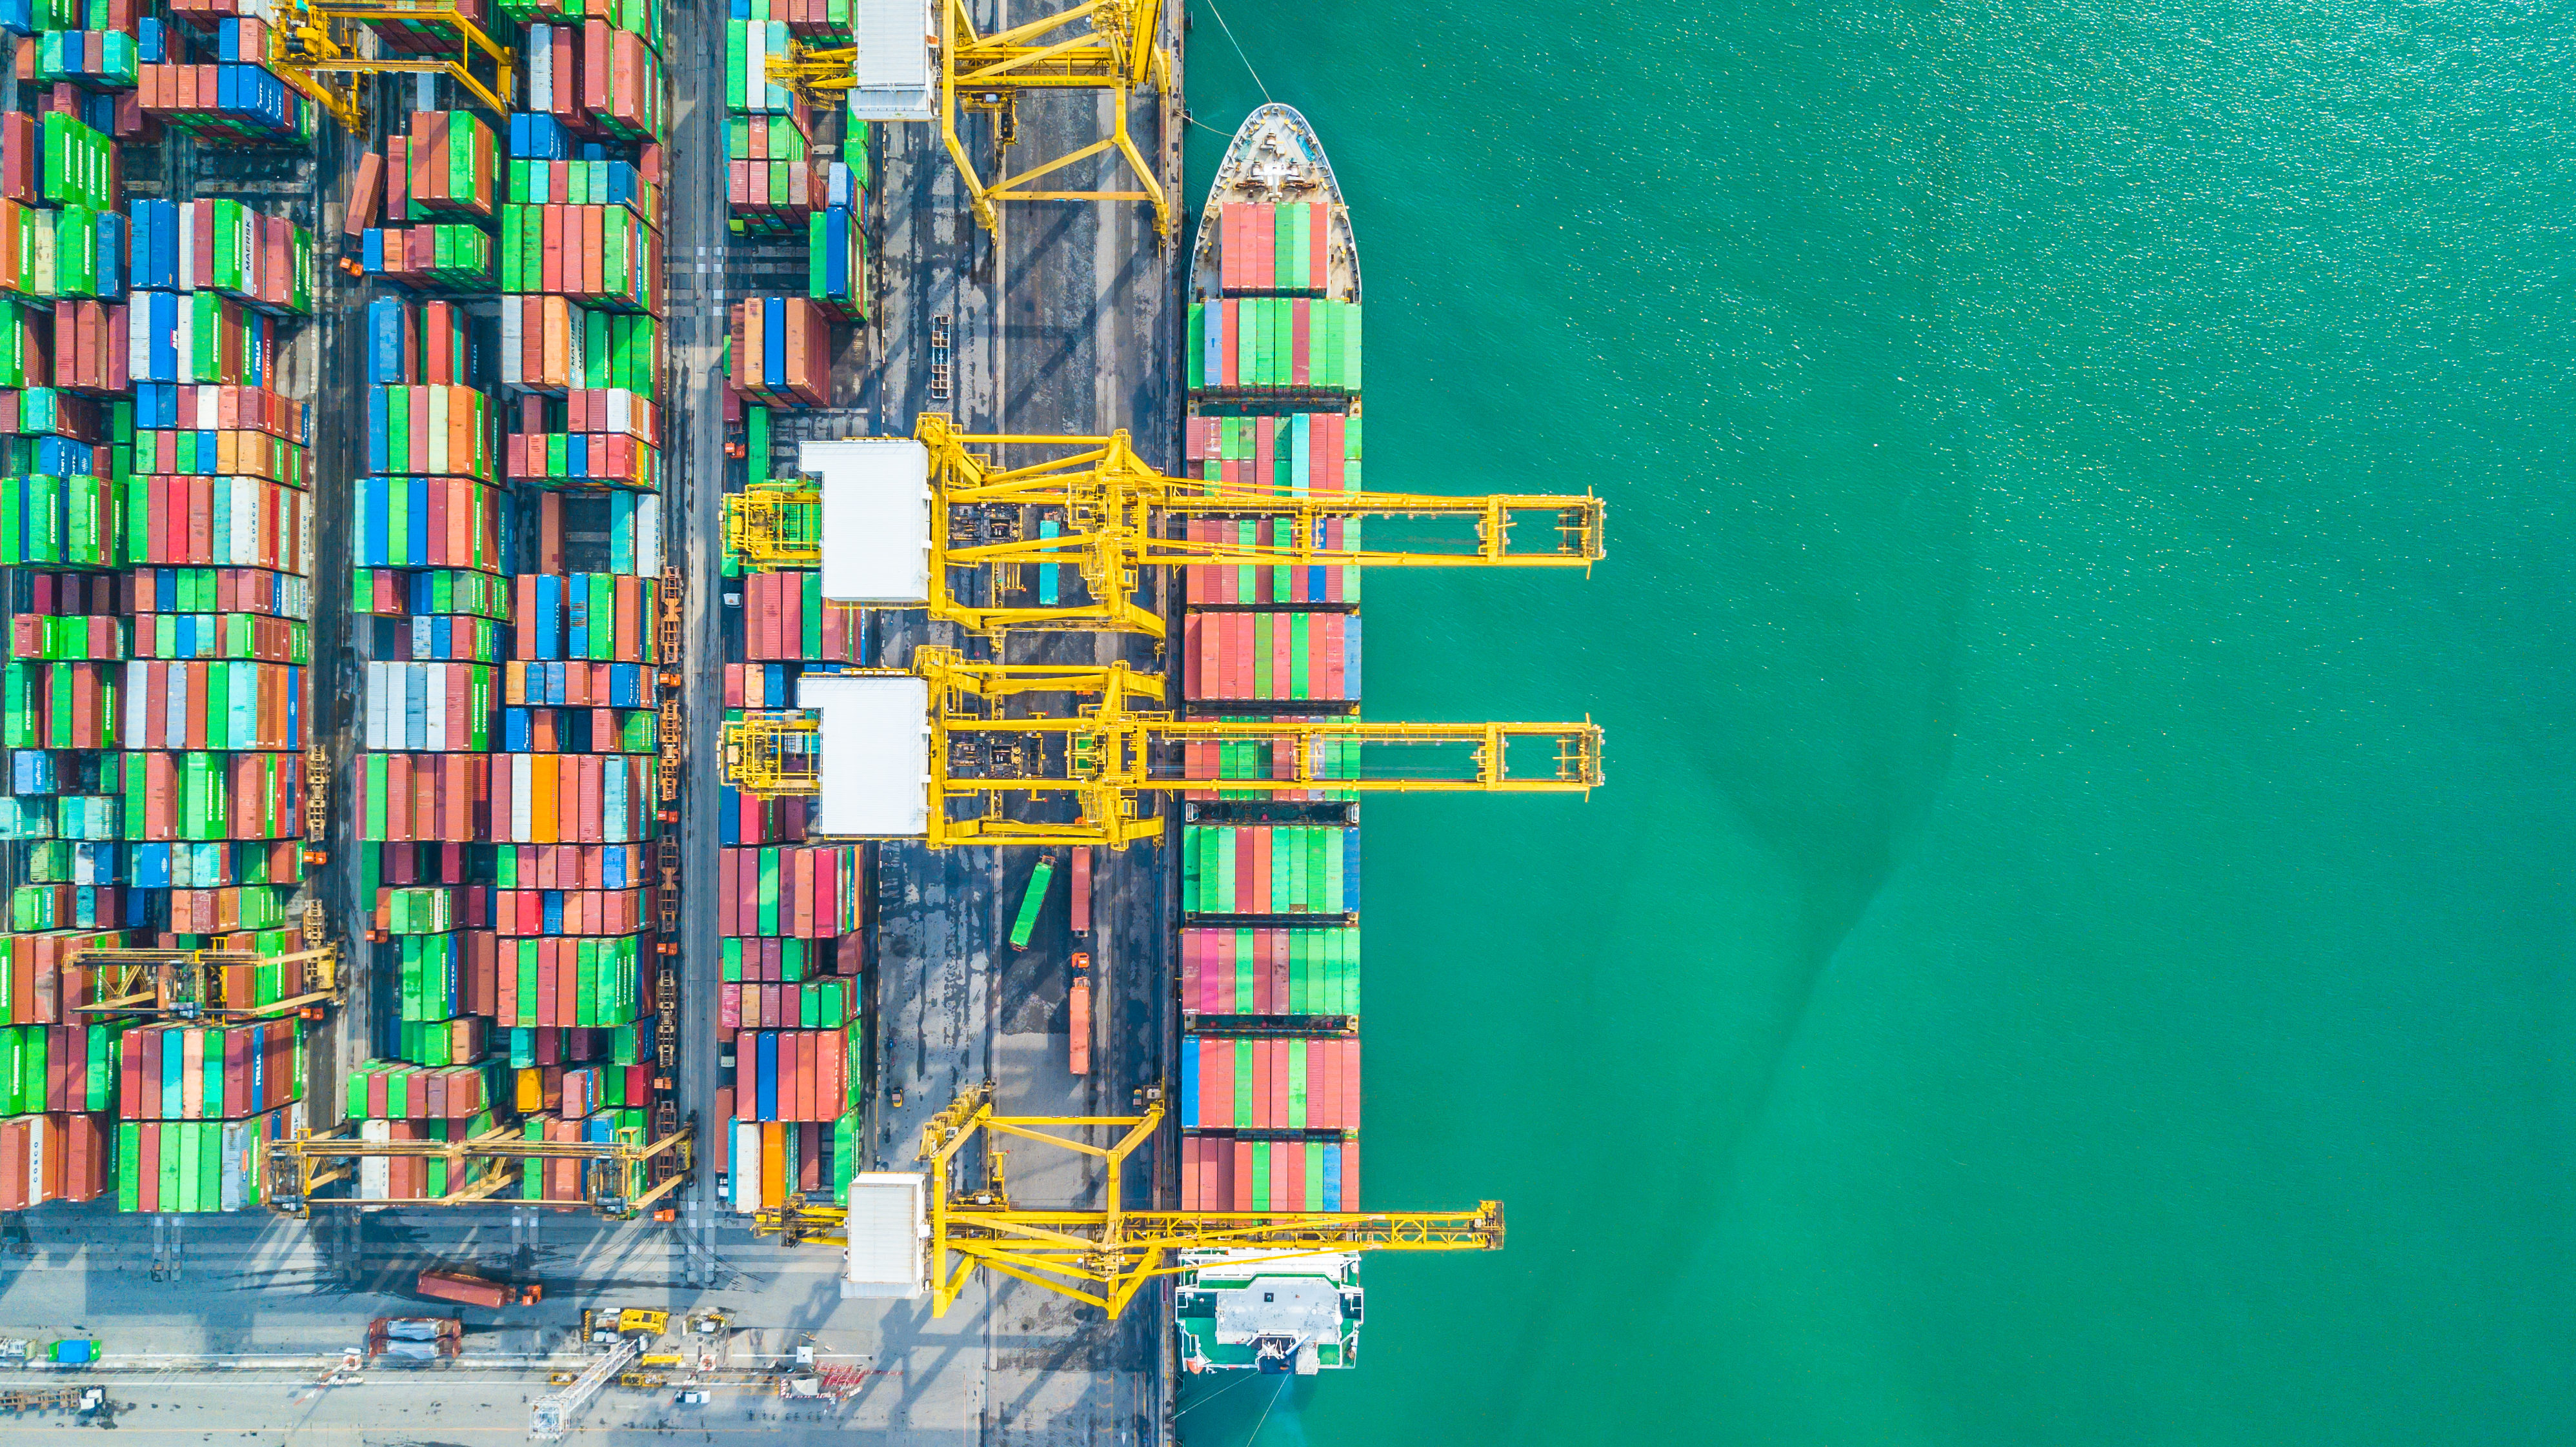 Loftopklärung Top View Container Cargo Schëff, Business Import Export Logistik an Transport vun International duerch Container Cargo Schëff am oppene Mier.